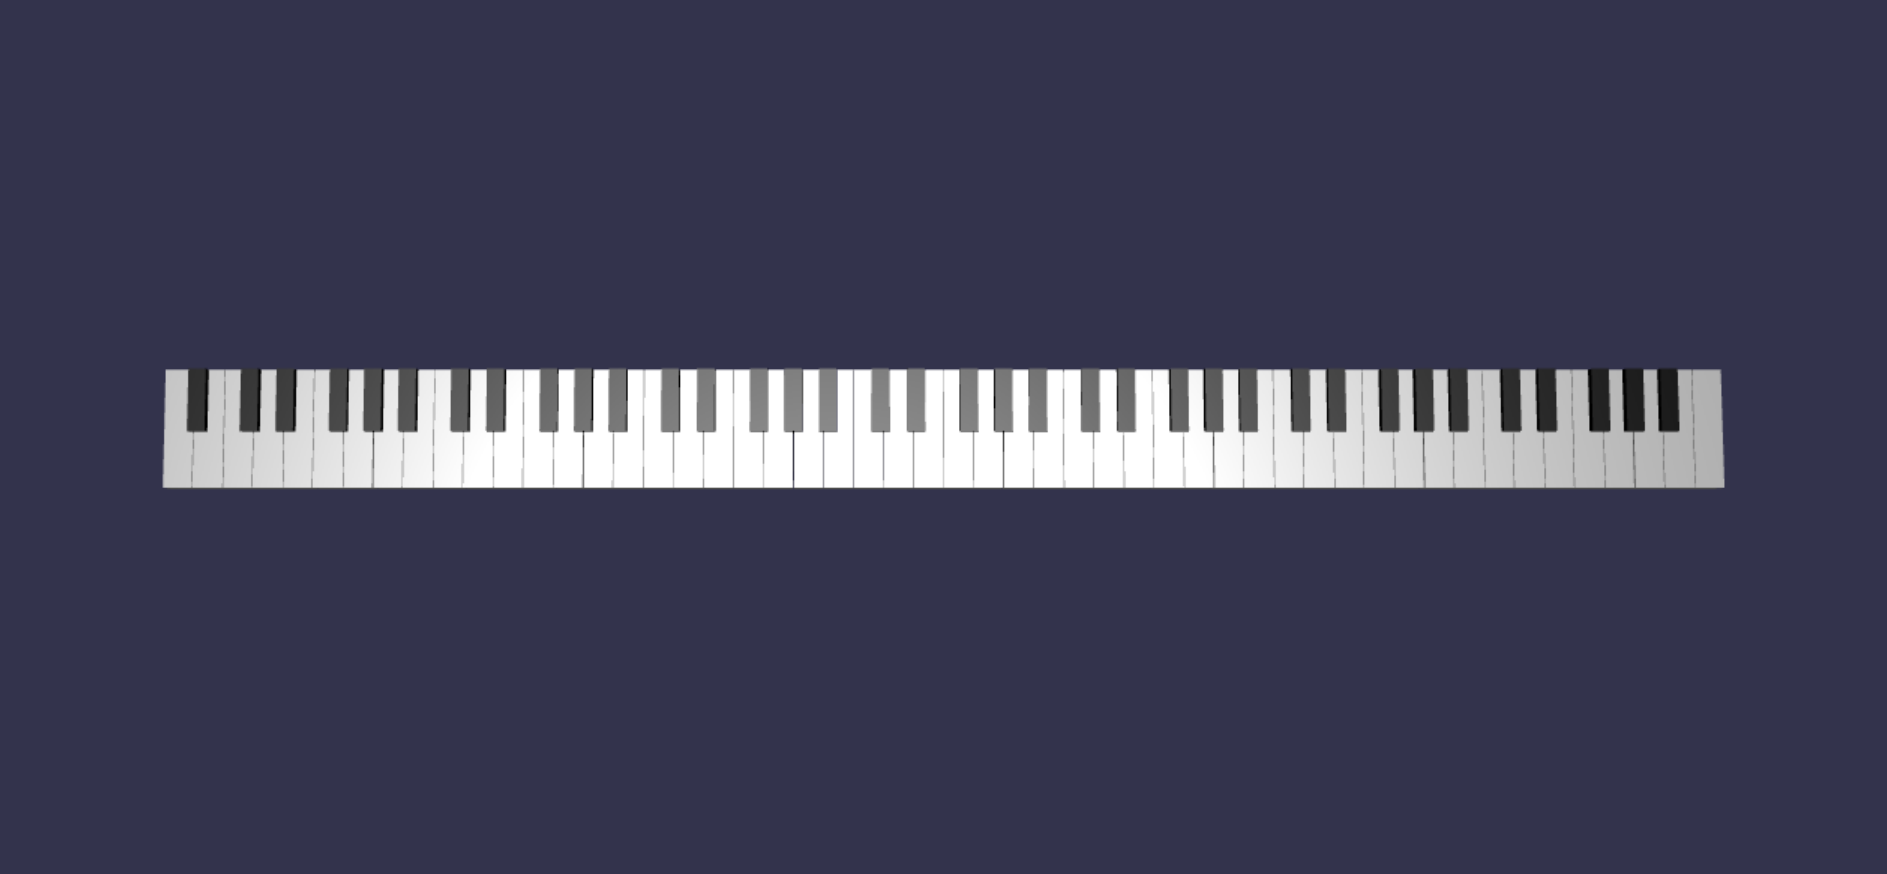 Malha de teclado de piano completo